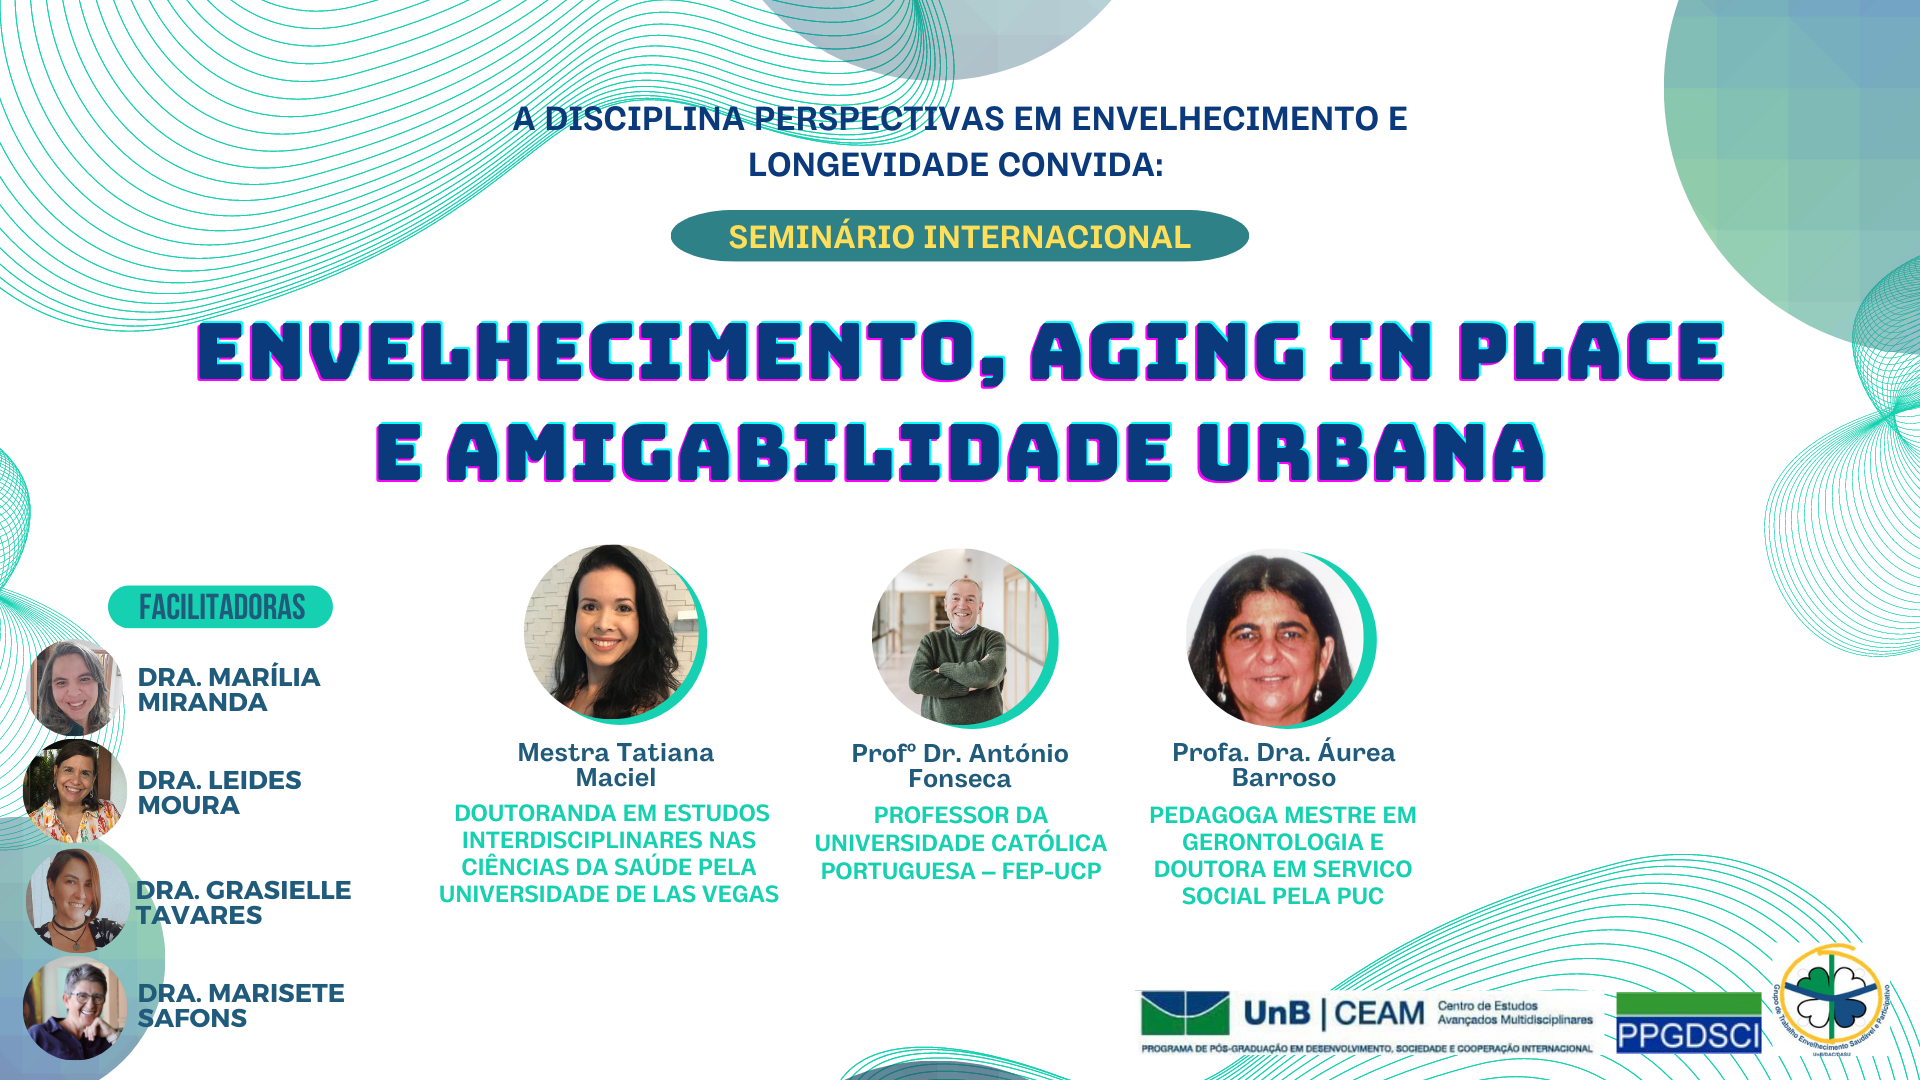 Seminário Internacional - Envelhecimento, Aging in Place e Amigabilidade Urbana